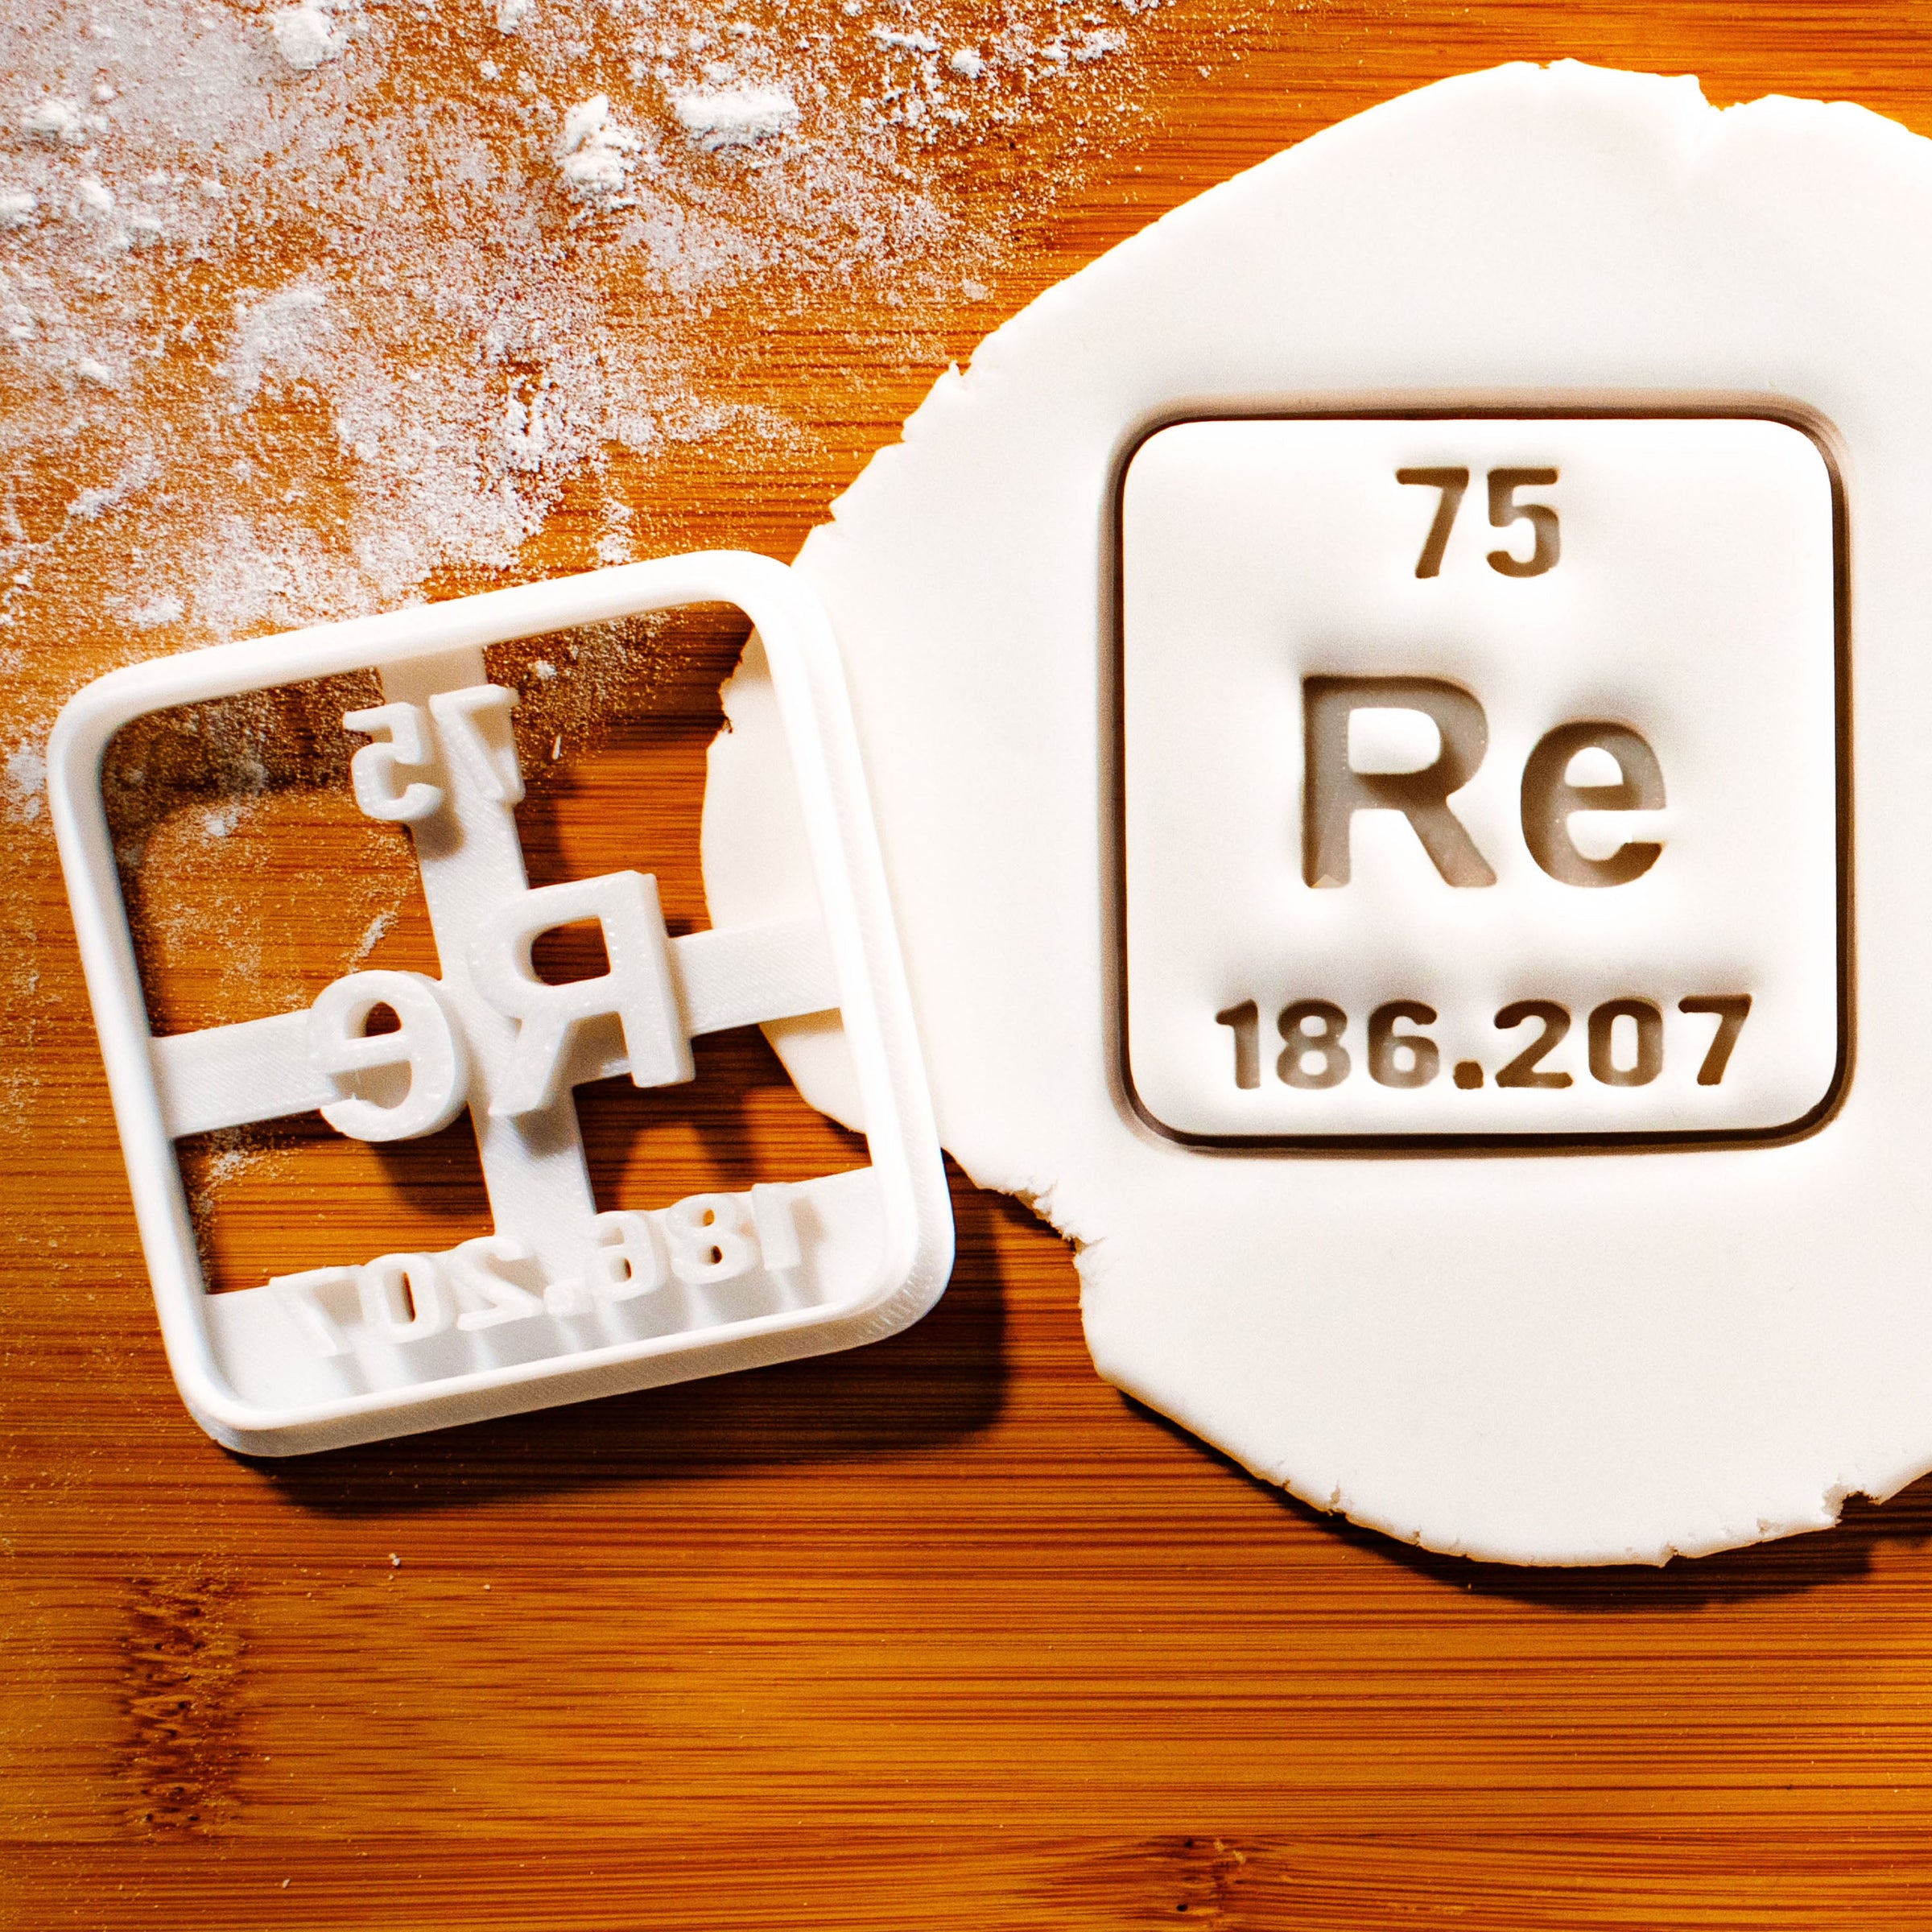 Rhenium Periodic Table Element Cookie Cutters (Symbol Re)